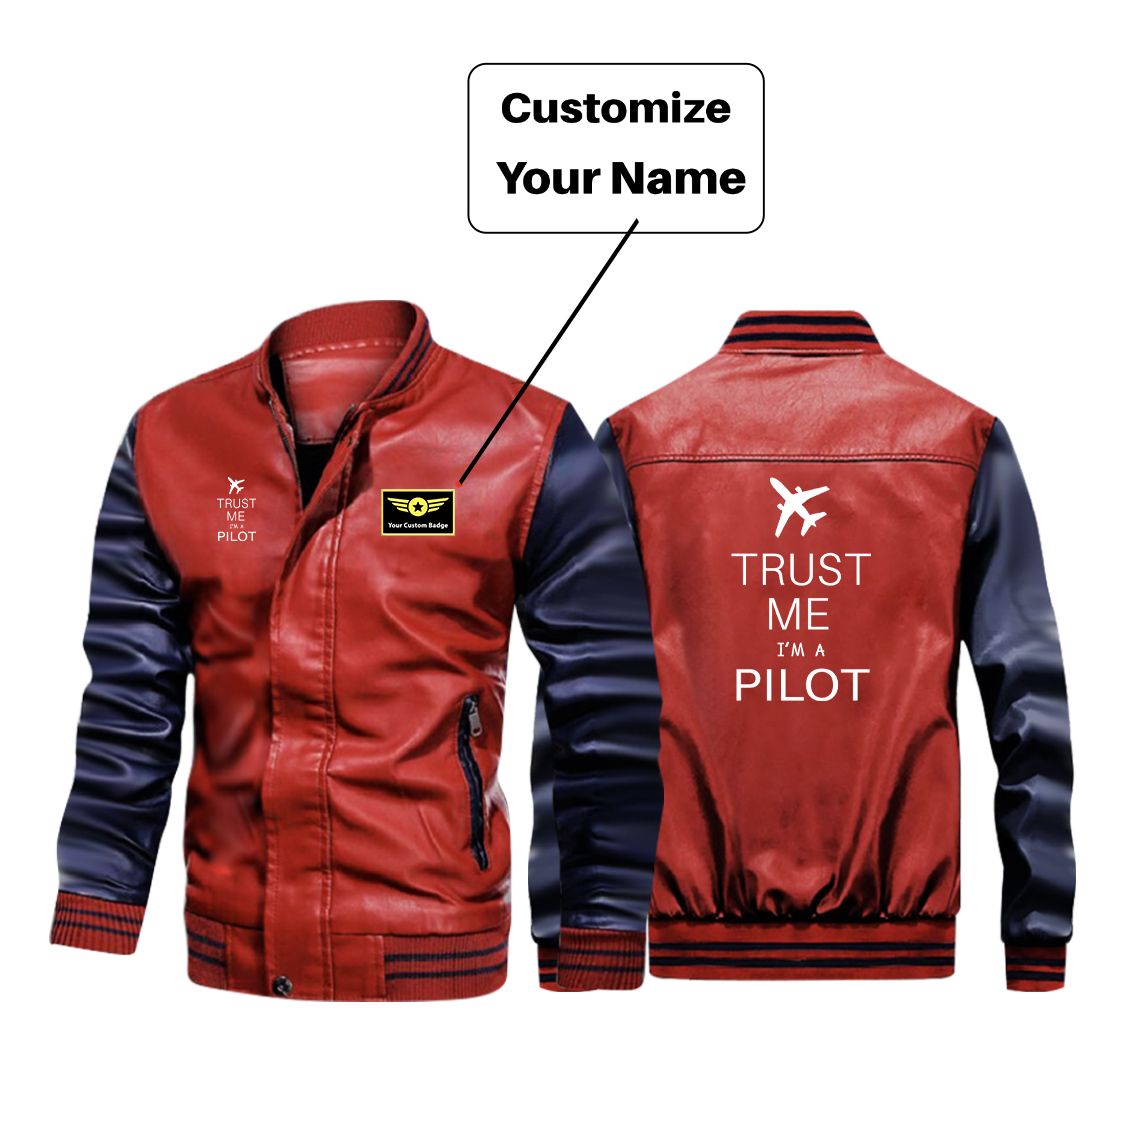 Trust Me I'm a Pilot 2 Designed Stylish Leather Bomber Jackets